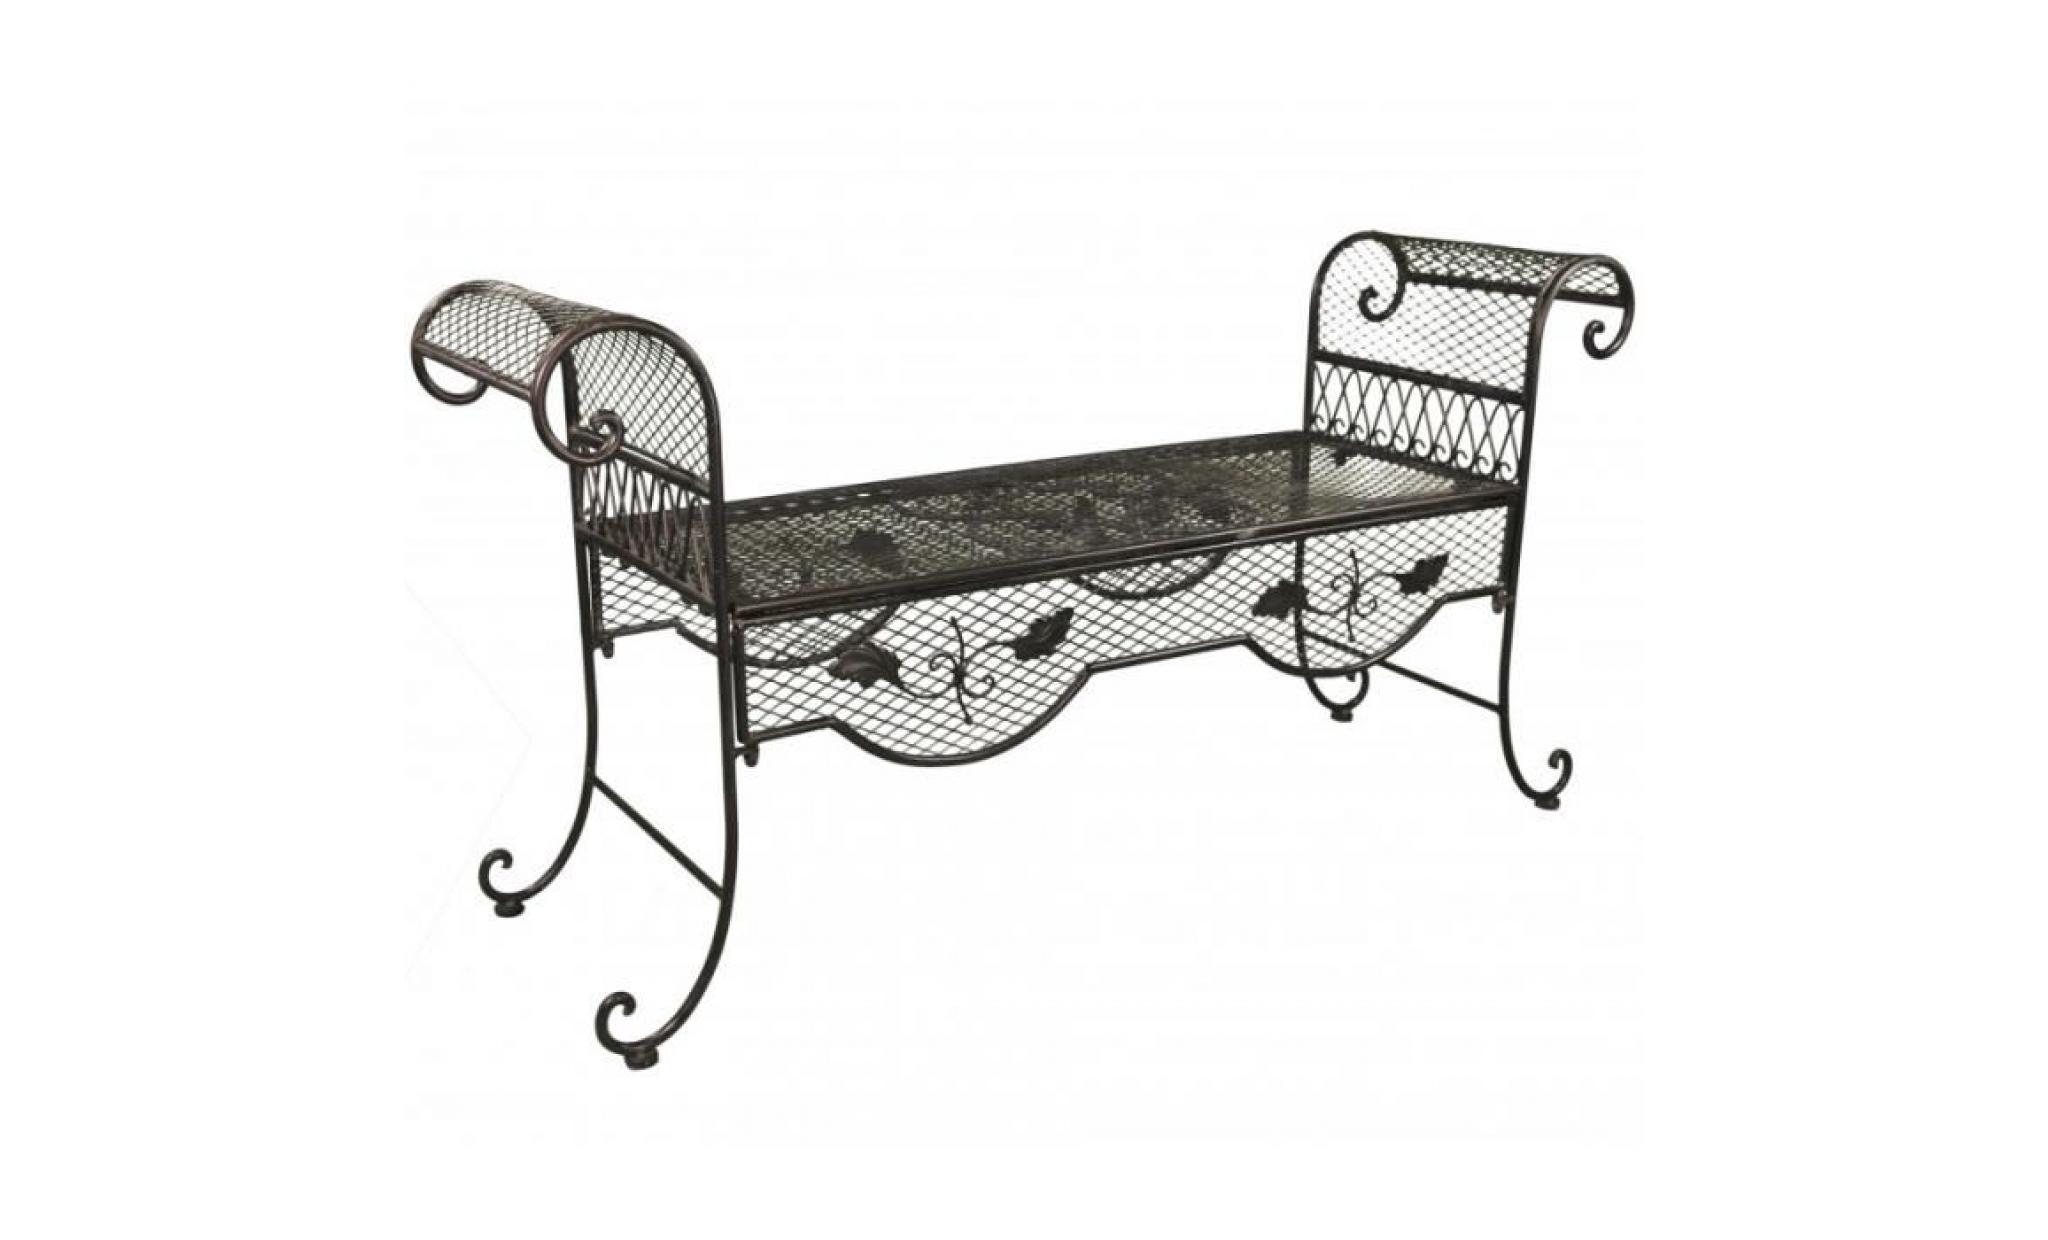 banc style dagobert banquette fauteuil mobilier de jardin assise exterieur 2 places en fer marron 40x70x136cm pas cher